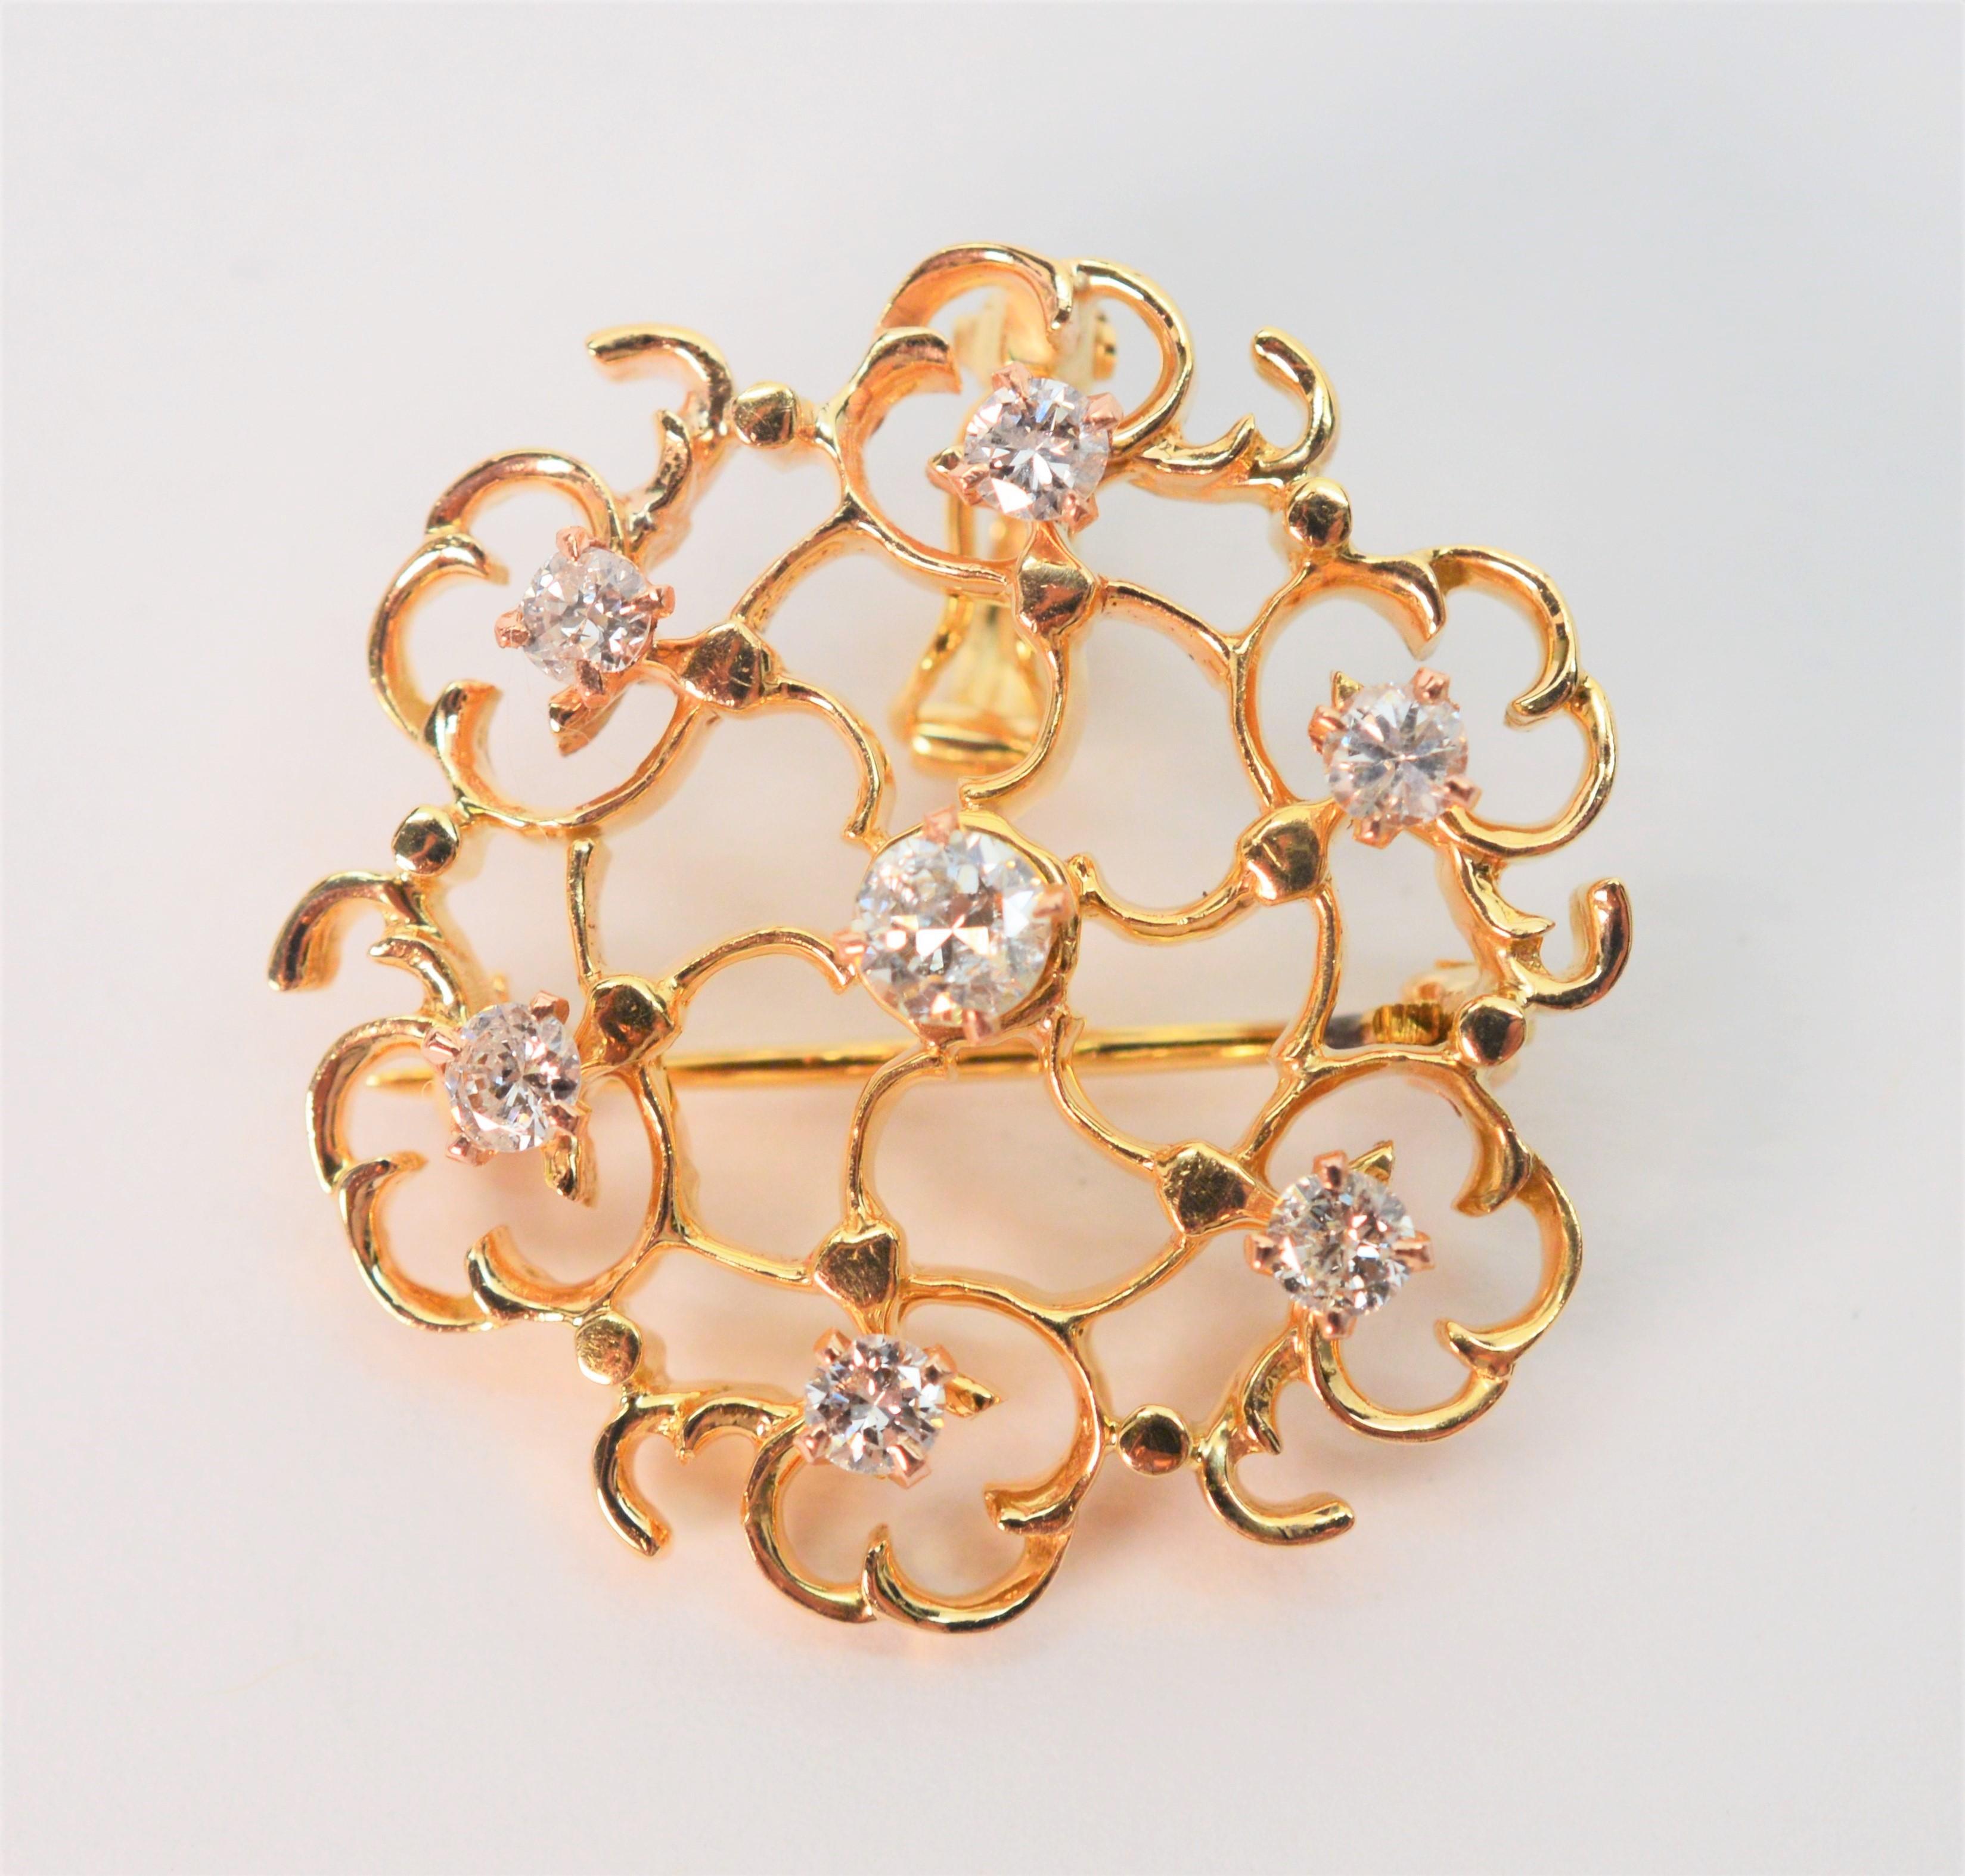 Erhöhen Sie Ihren Look mit diesem süßen Schmuckstück aus vierzehn Karat Gelbgold (14K). Perfekt als Brosche an einem Revers oder Schal zu tragen  oder als Anhänger an einer Kette, einem Halsband oder einem Perlenstrang.
Mit sieben Diamanten Akzente